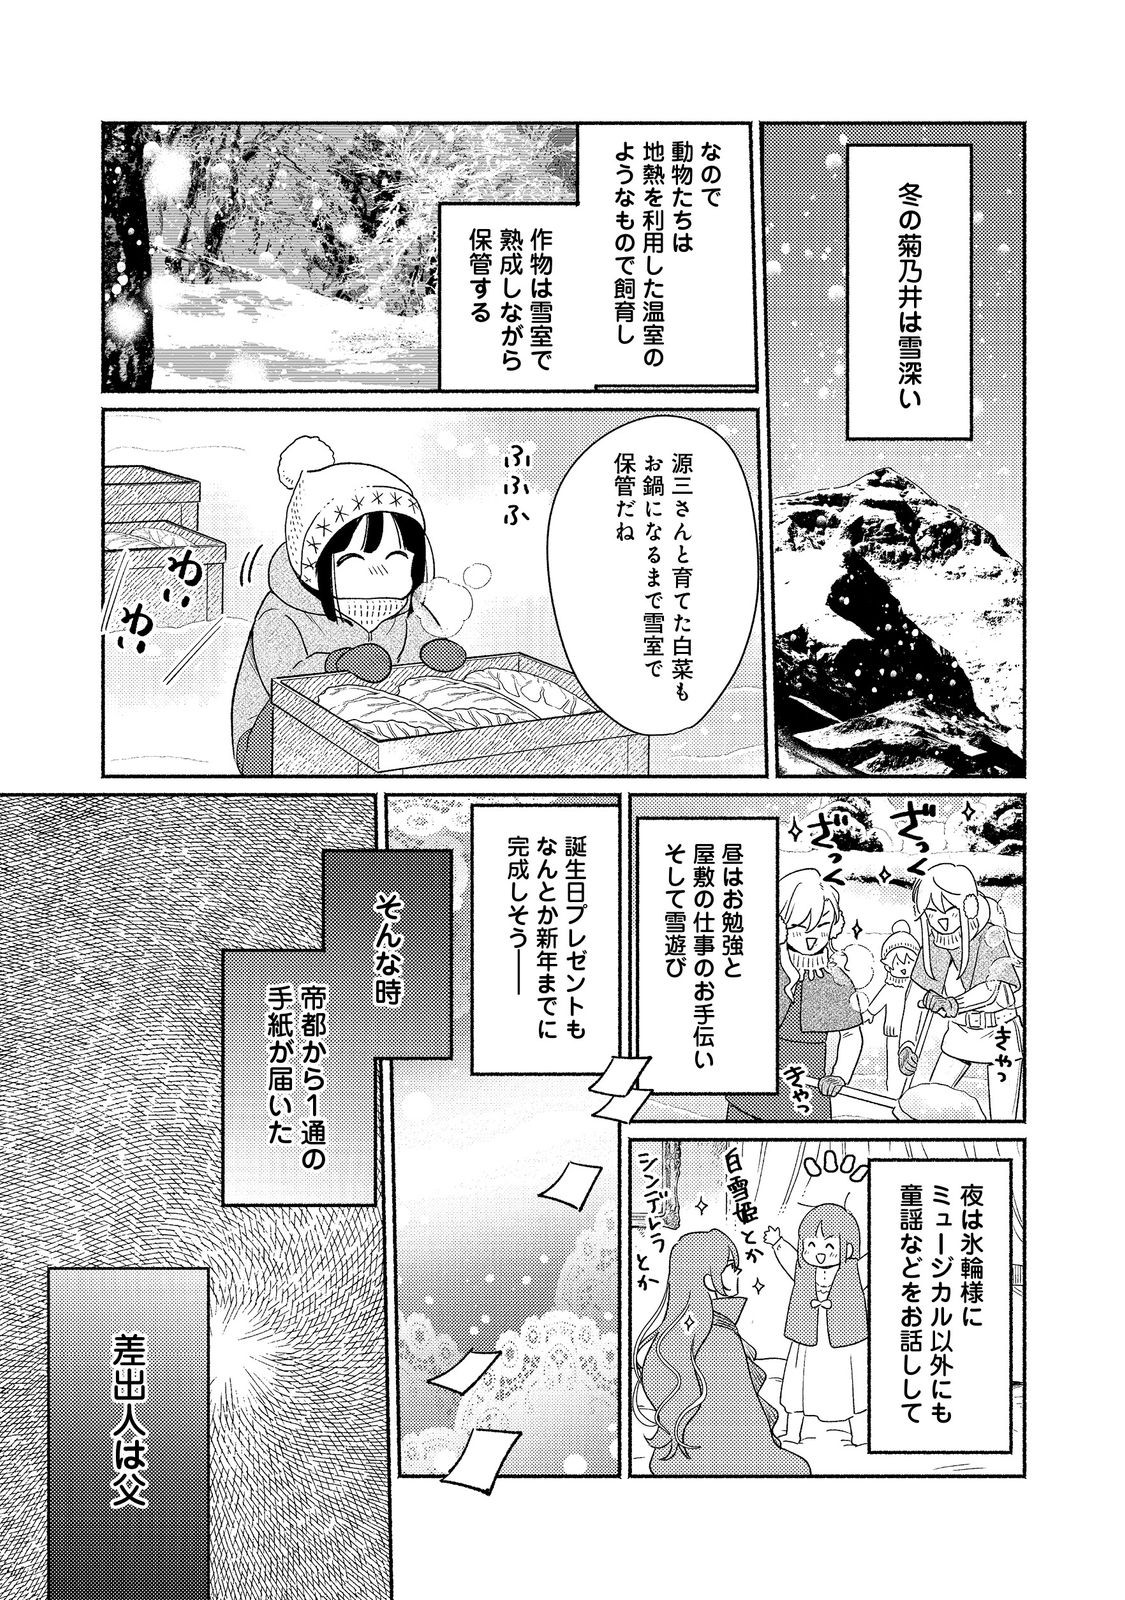 Shirobuta Kizoku desu ga Zense no Kioku ga Haeta node Hiyoko na Otouto Sodatemasu - Chapter 24.2 - Page 1